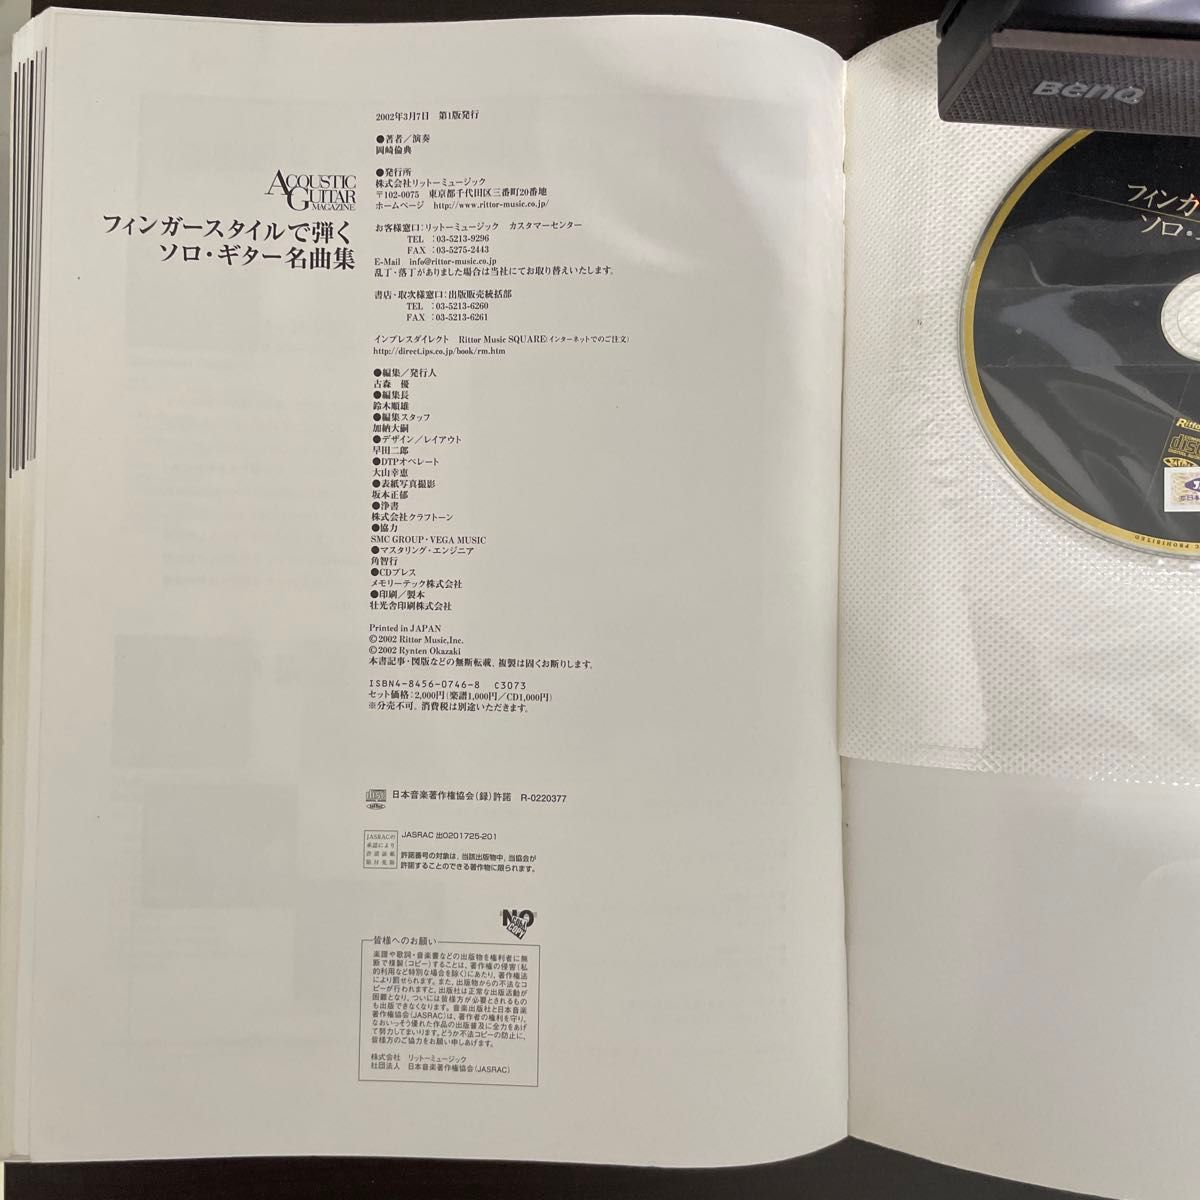 リットーミュージック 岡崎倫典 フィンガースタイルで弾くソロ・ギター名曲集 CD付